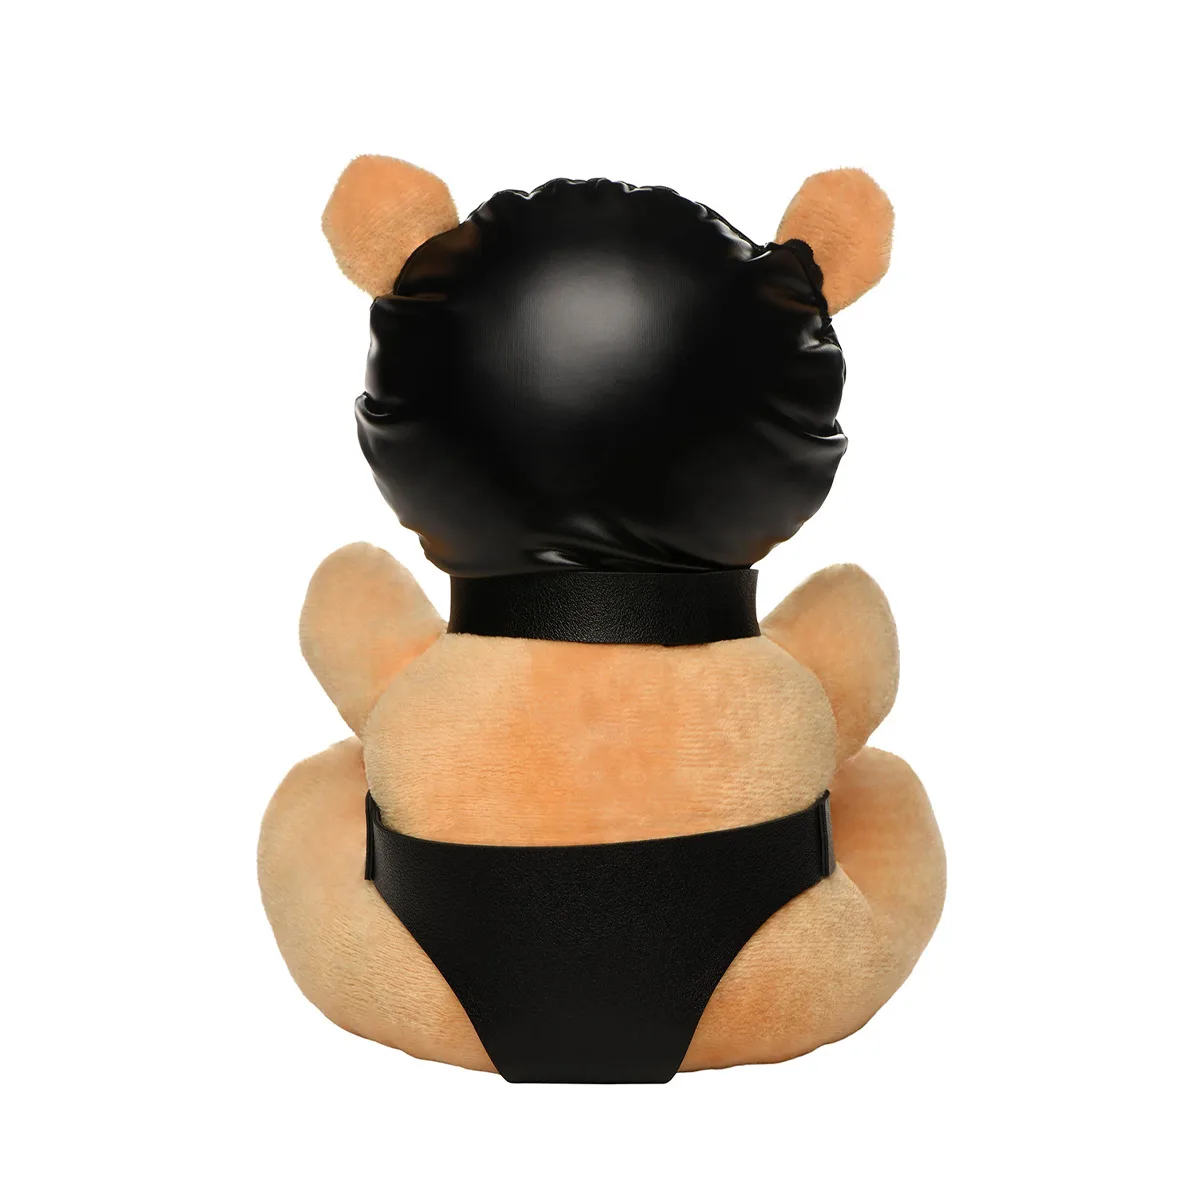 Hooded-Teddy-Bear-Plush-OPR-1070065-2